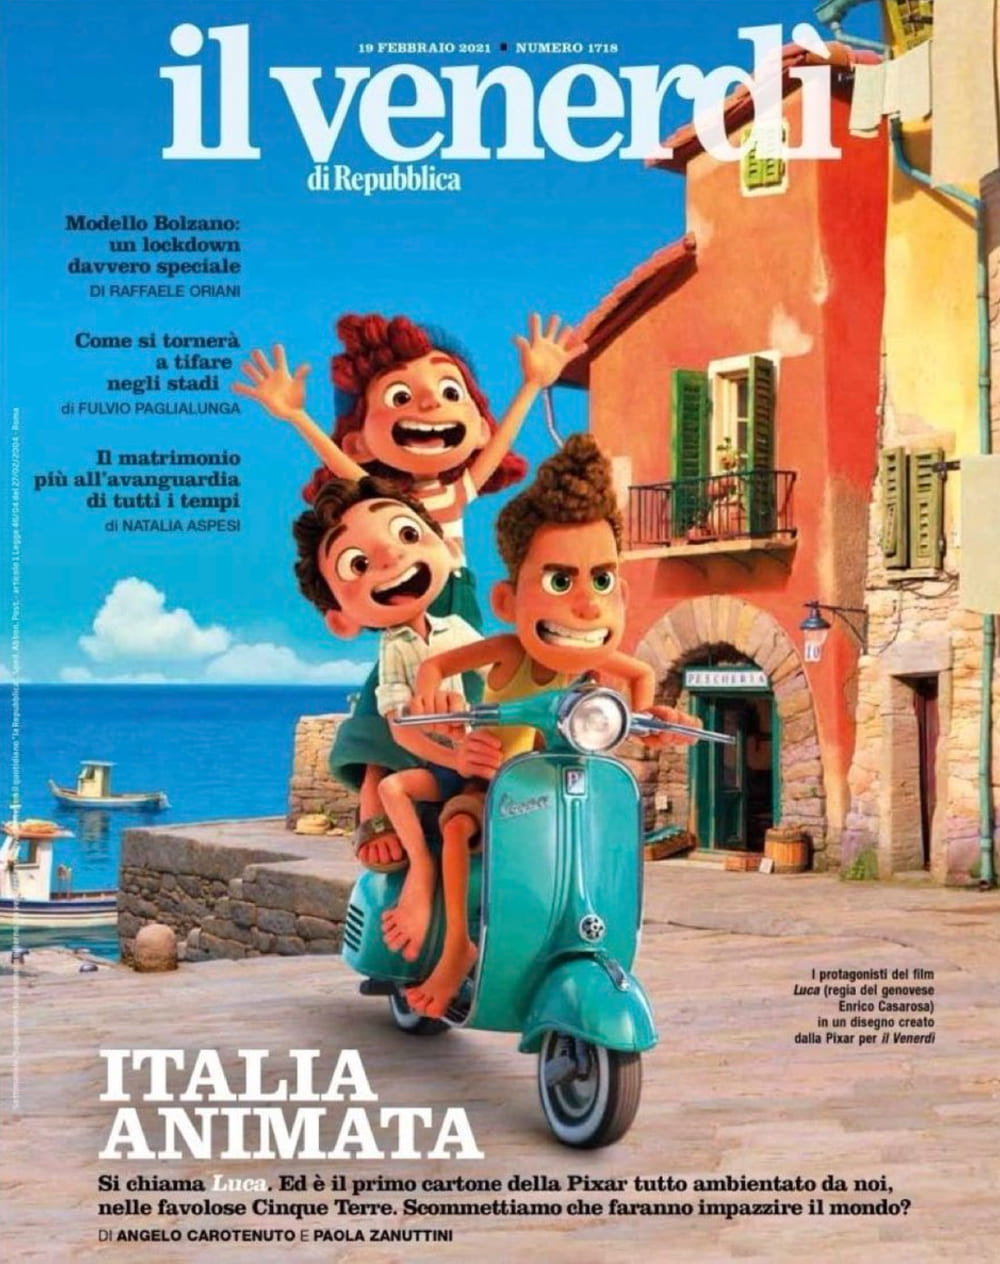 Luca 海の世界からやって来たモンスターの少年たちのひと夏の成長の物語を イタリアを舞台に描いたディズニー ピクサーのアニメ映画の最新作 ルカ の予告編を初公開 Cia Movie News